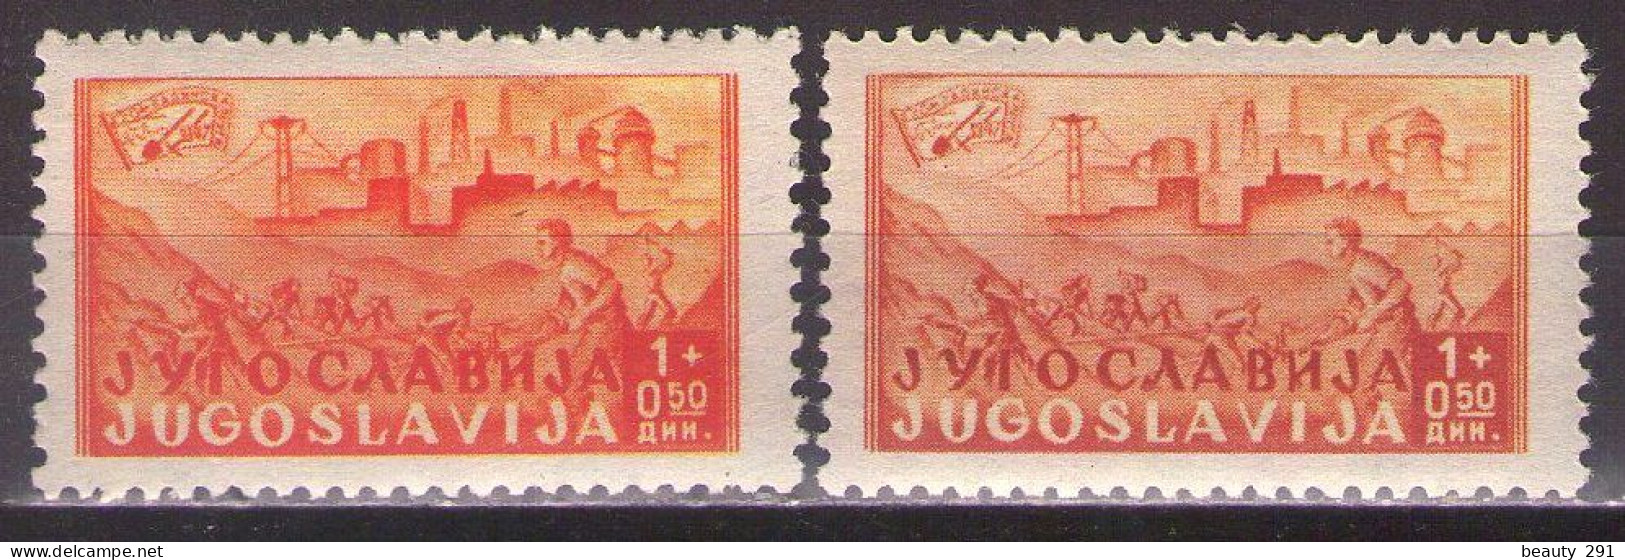 Yugoslavia 1947 Railway Samac - Sarajevo, Mi 529 - DIFFERENT COLOR - MNH**VF - Unused Stamps